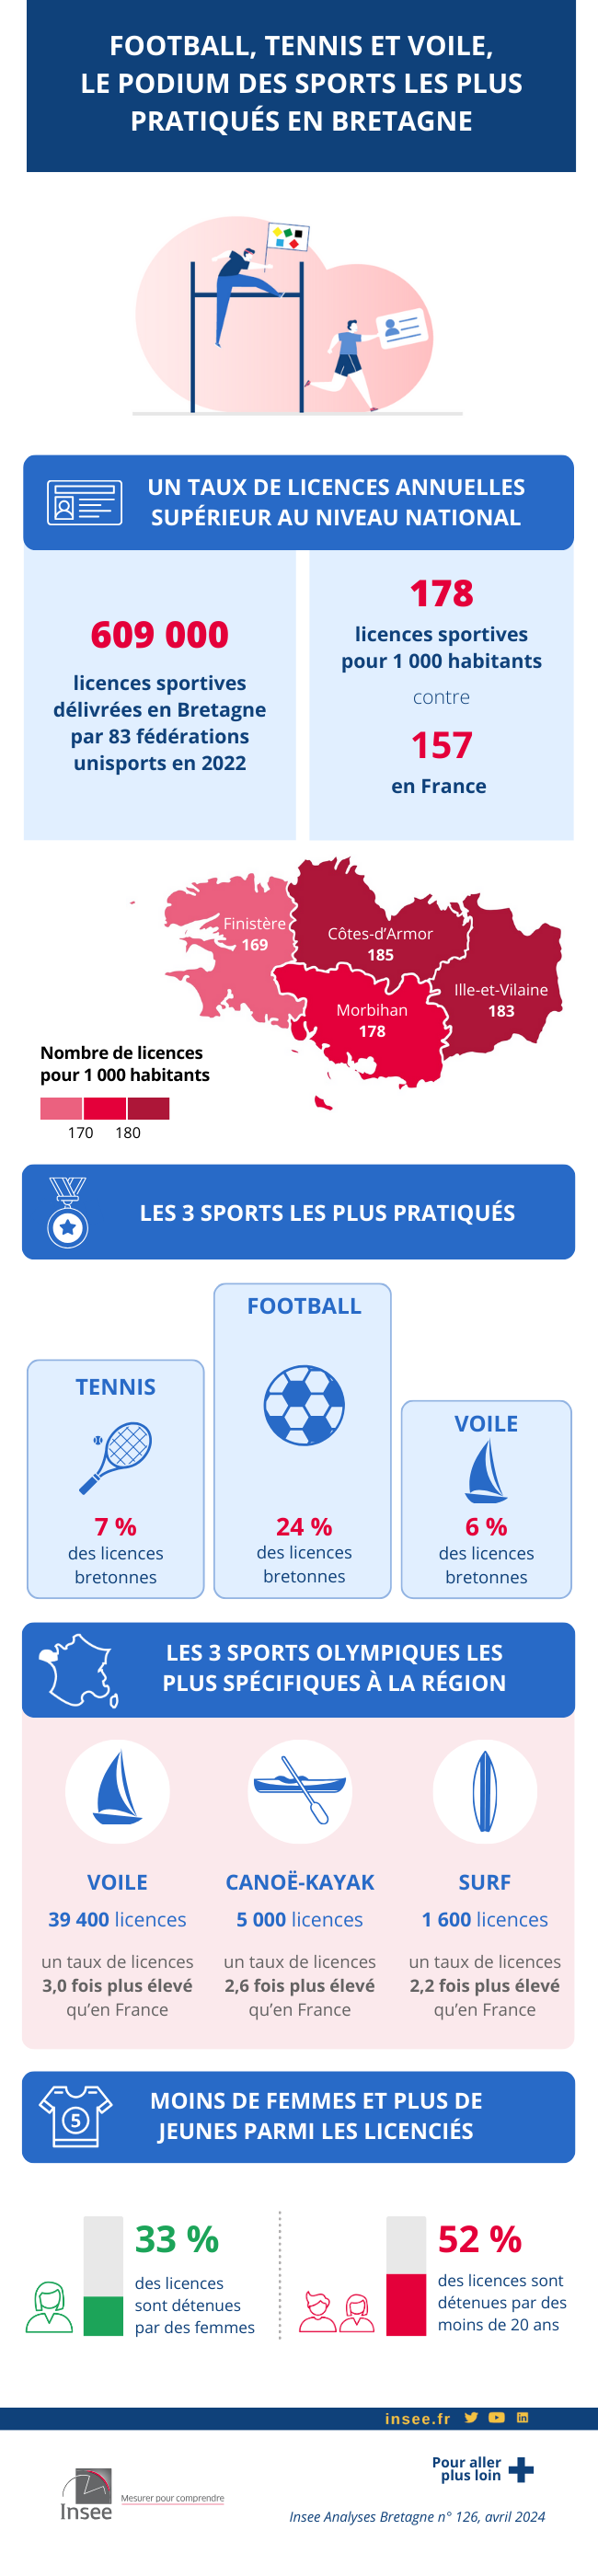 Infographie sur le sport en Bretagne